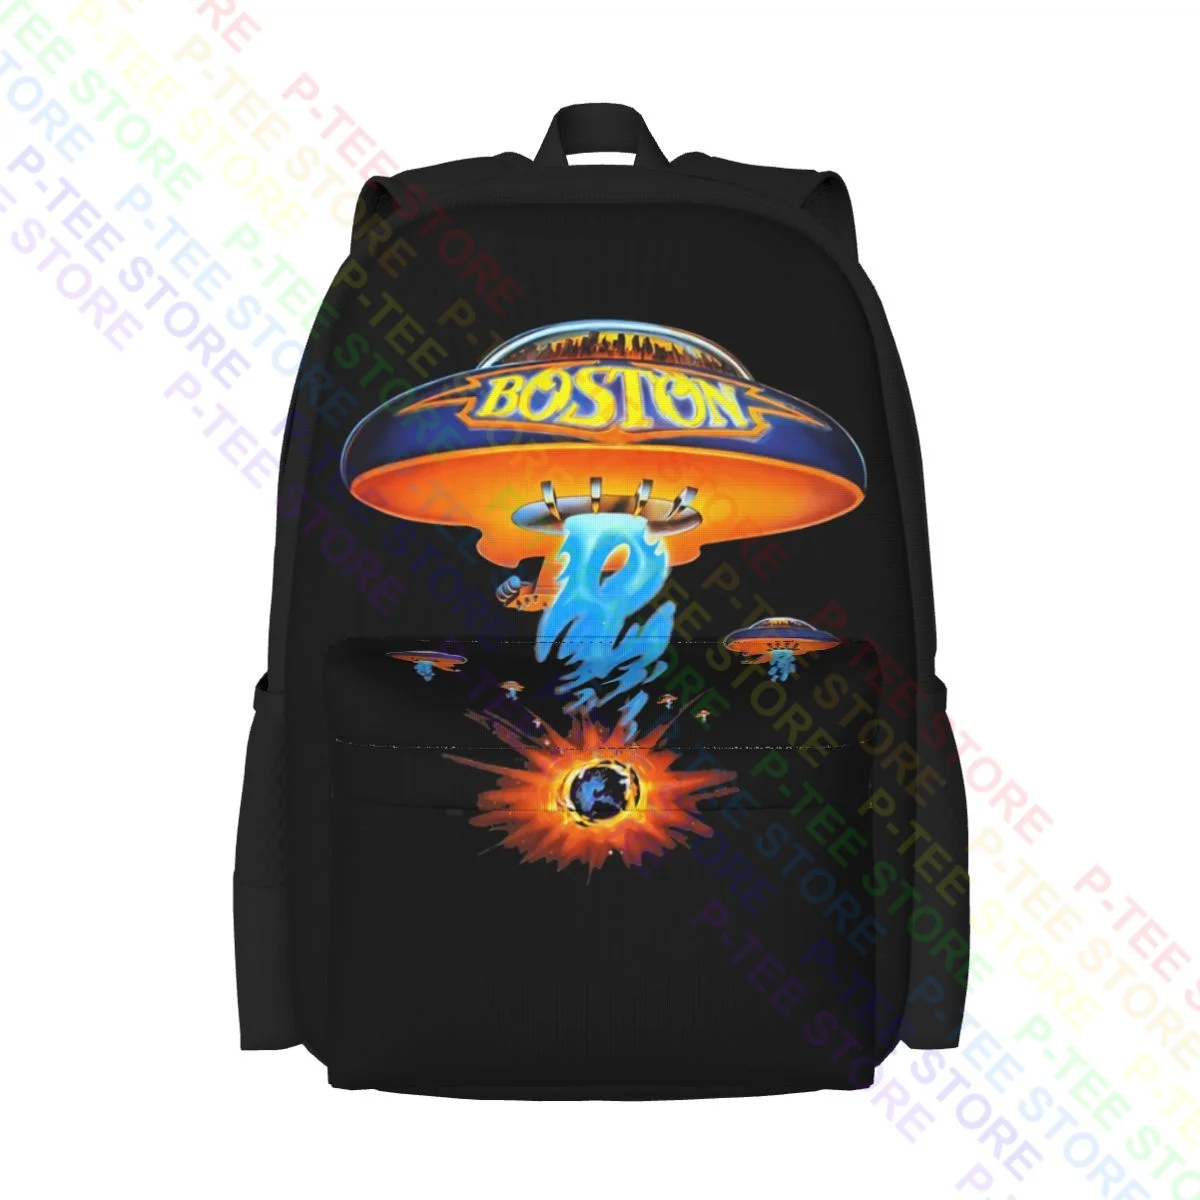 Бостон Рок-Группы Концерт Тур 1987 большой емкости рюкзак для спортзала плавания Персонализированная школьная спортивная сумка